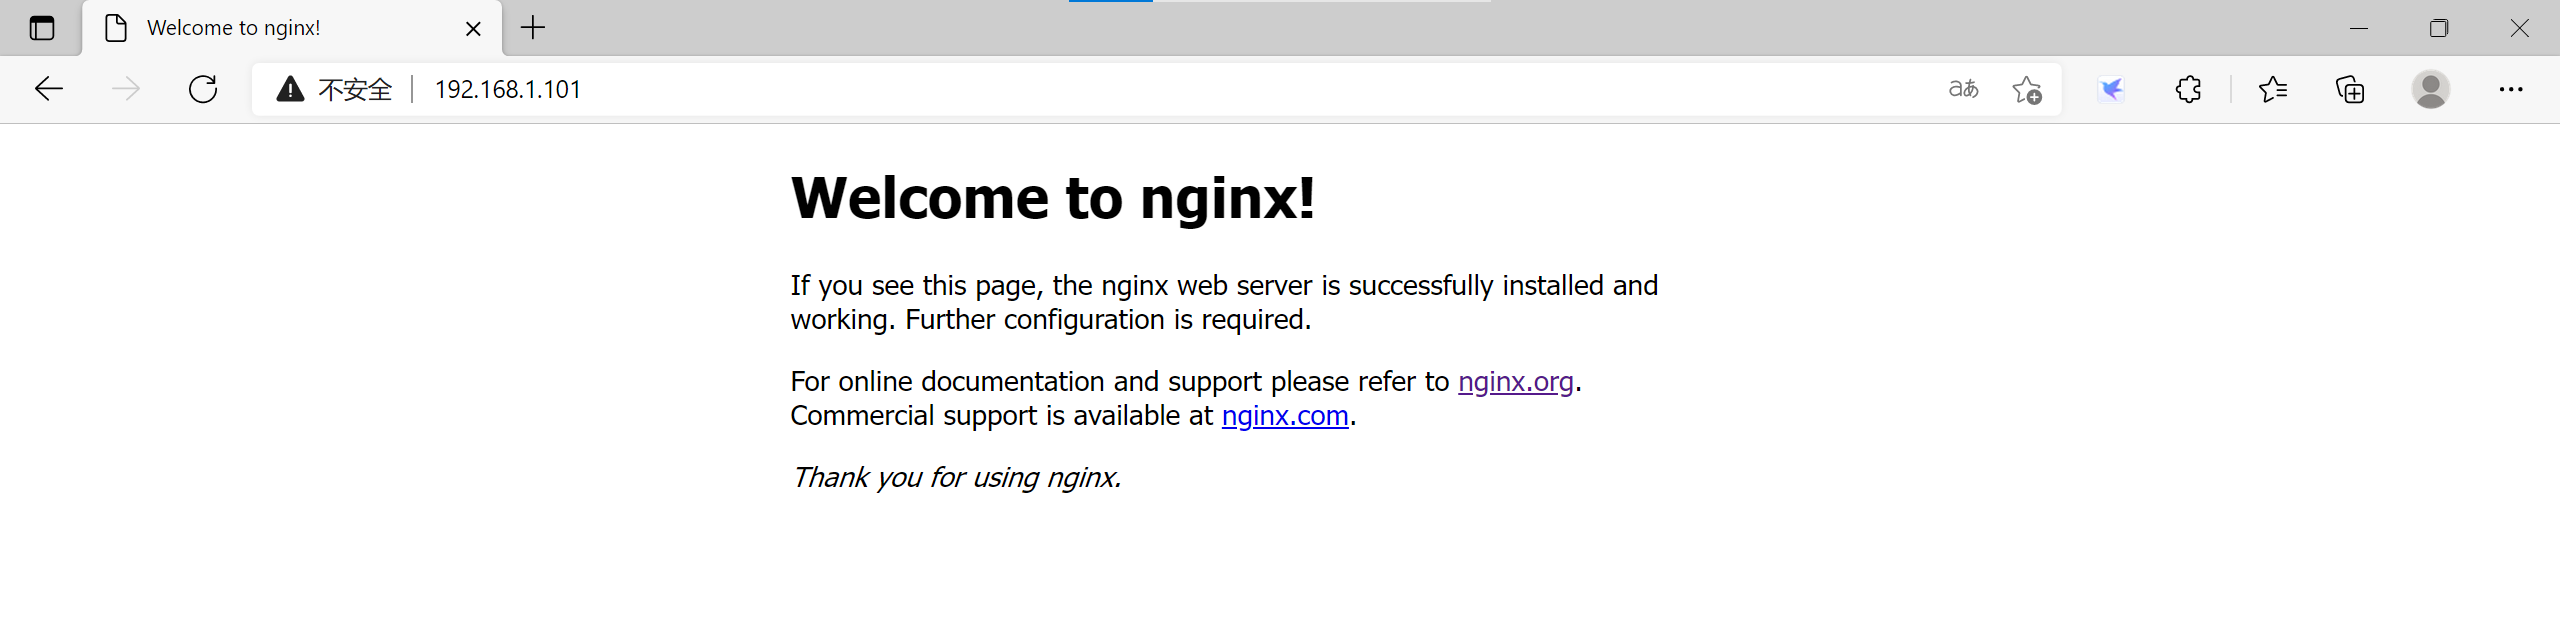 企业级高性能Web服务之Nginx详解